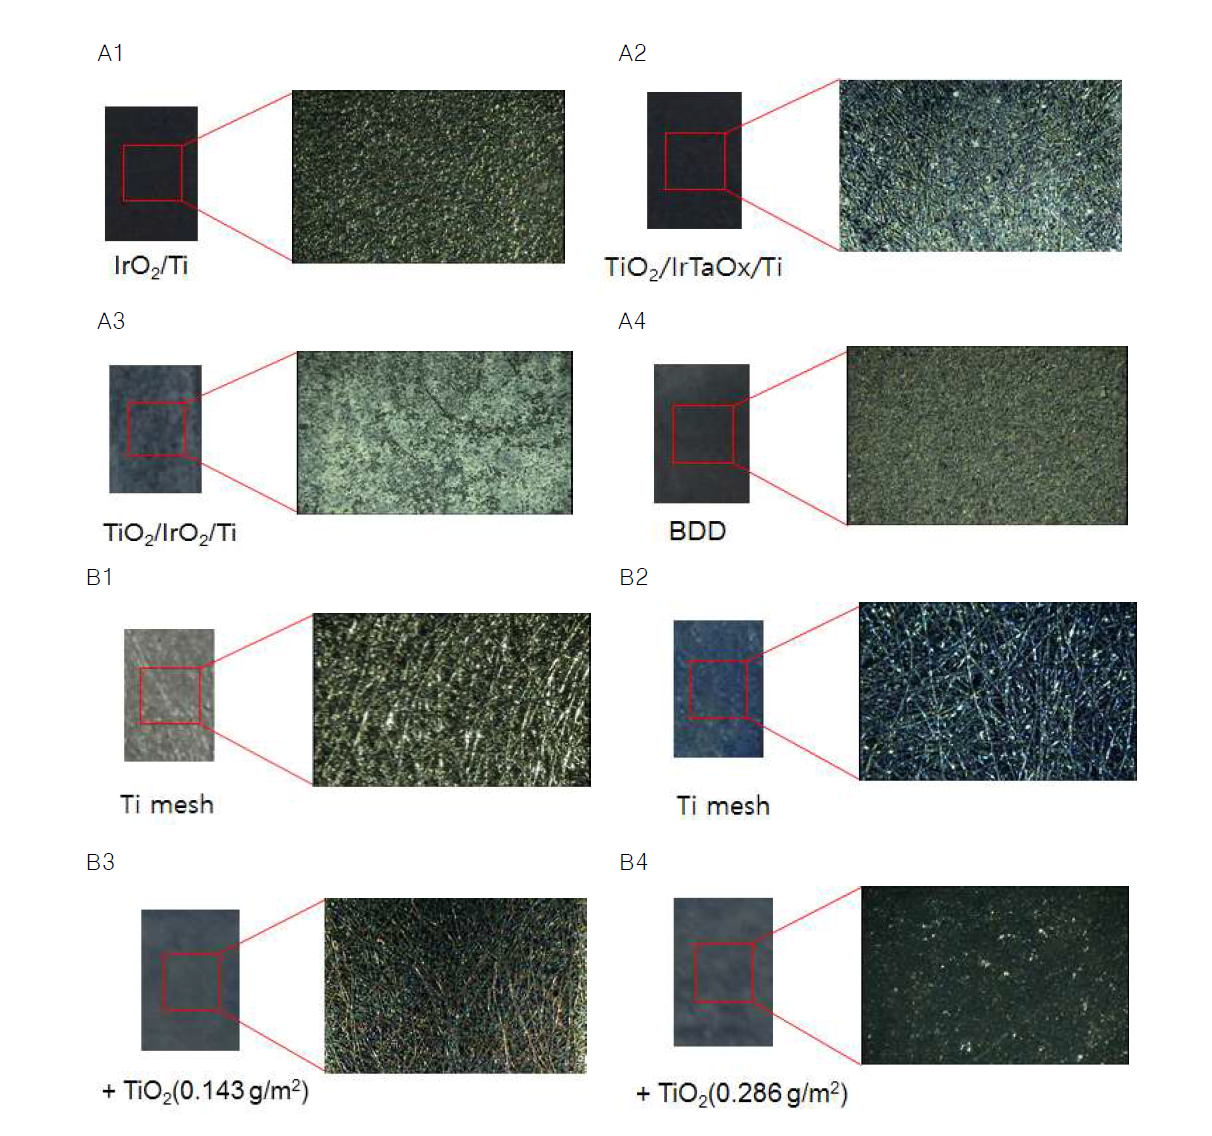 비디오 현미경을 이용한 전극 표면 사진. (A) 플레이트전극, (B) Ti 메쉬 전극과 TiO2 코 팅 전극, (C) TiO2와 도핑물질의 몰비가 1%인 메쉬전극, (D) TiO2와 도핑물질의 몰비가 10%인 메쉬전극